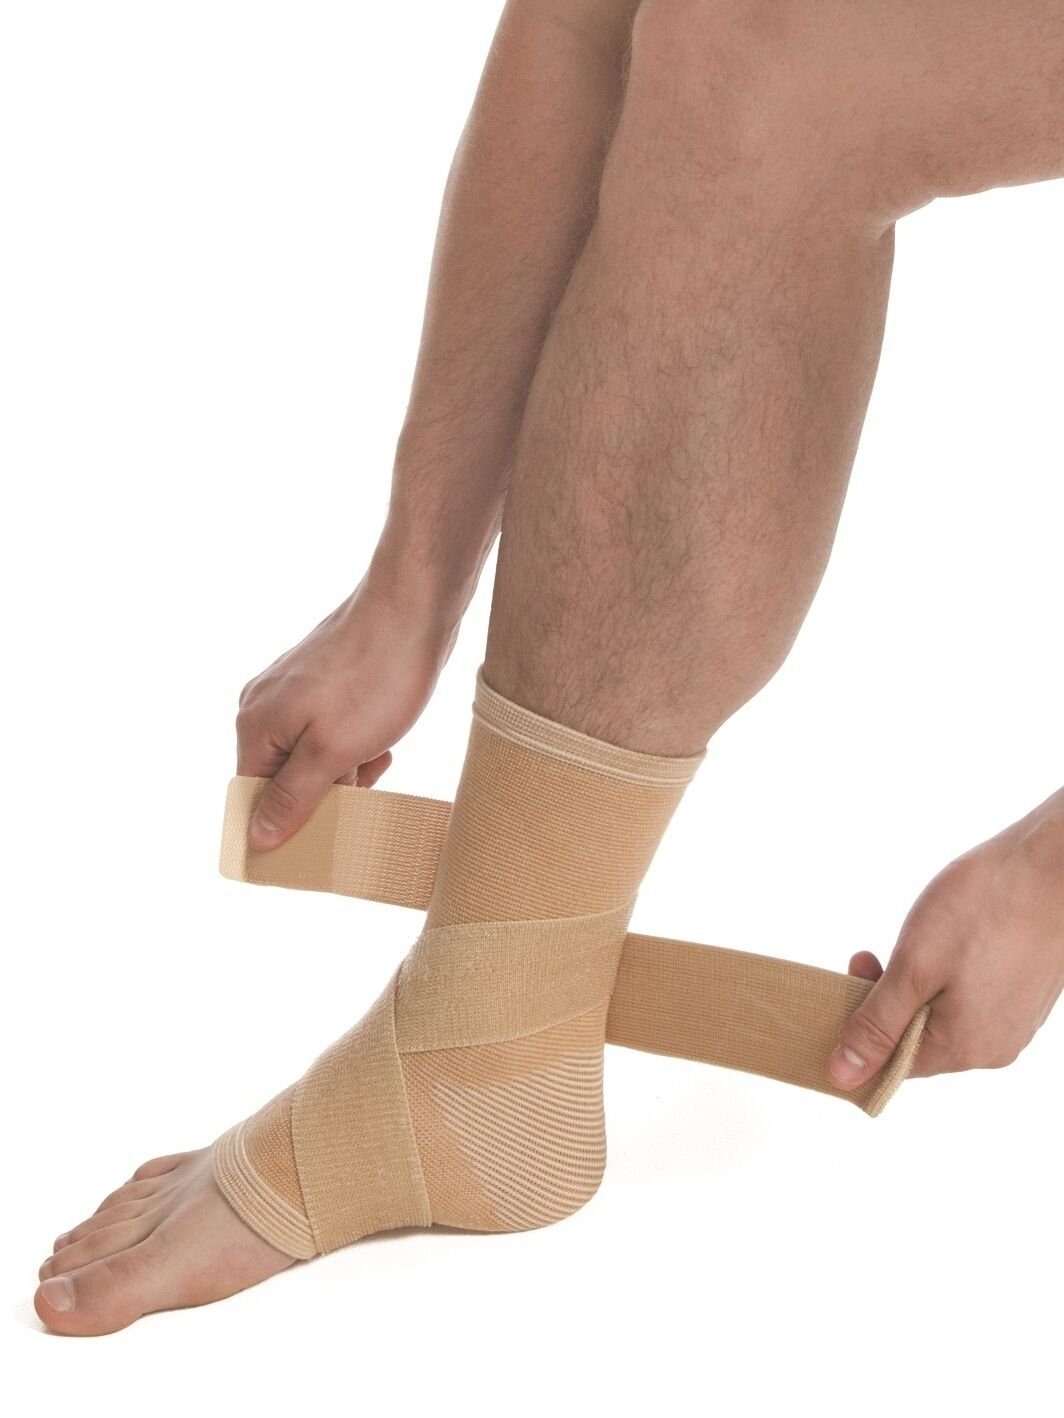 MedTex Fußbandage Bandage Sprunggelenk Fuß Strumpf Fixierung Kompression 7025, Kompression